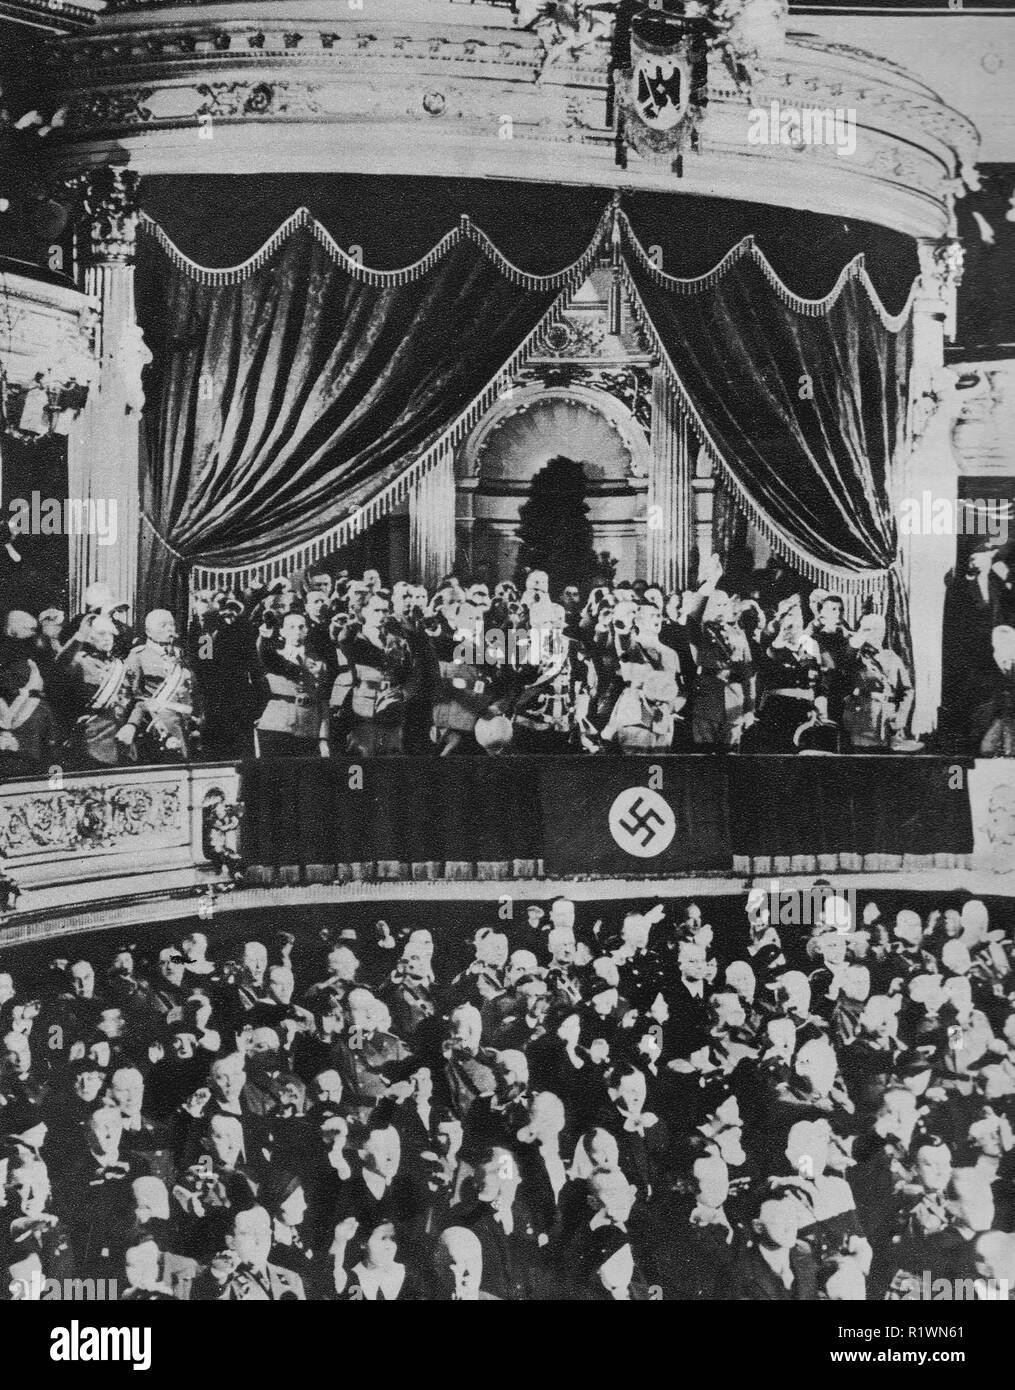 Hitler a Kroll Opera House, Berlino (sede del Reichstag) 16 marzo 1935 - giorno memoriale per i soldati caduti in guerra precedente - il suo armadio nazista e seguaci sono con lui sul balcone dando un saluto nazista Foto Stock